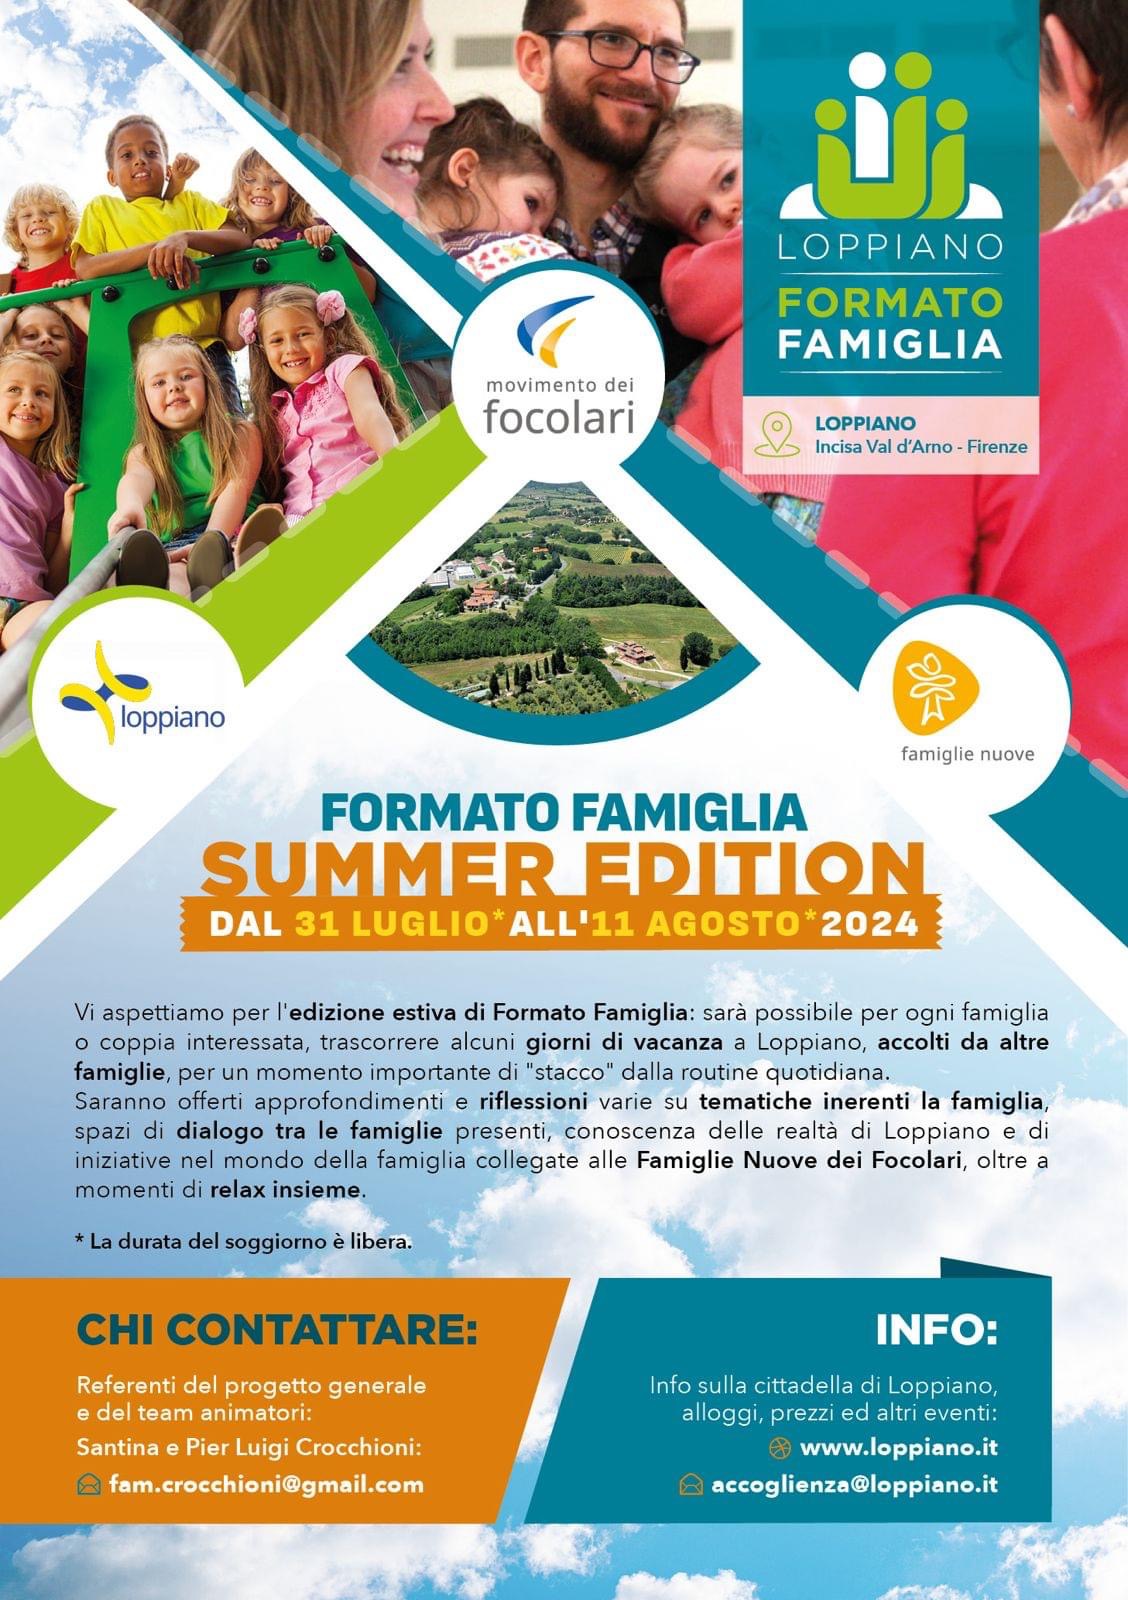 Loppiano: Formato Famiglia, Summer Edition.